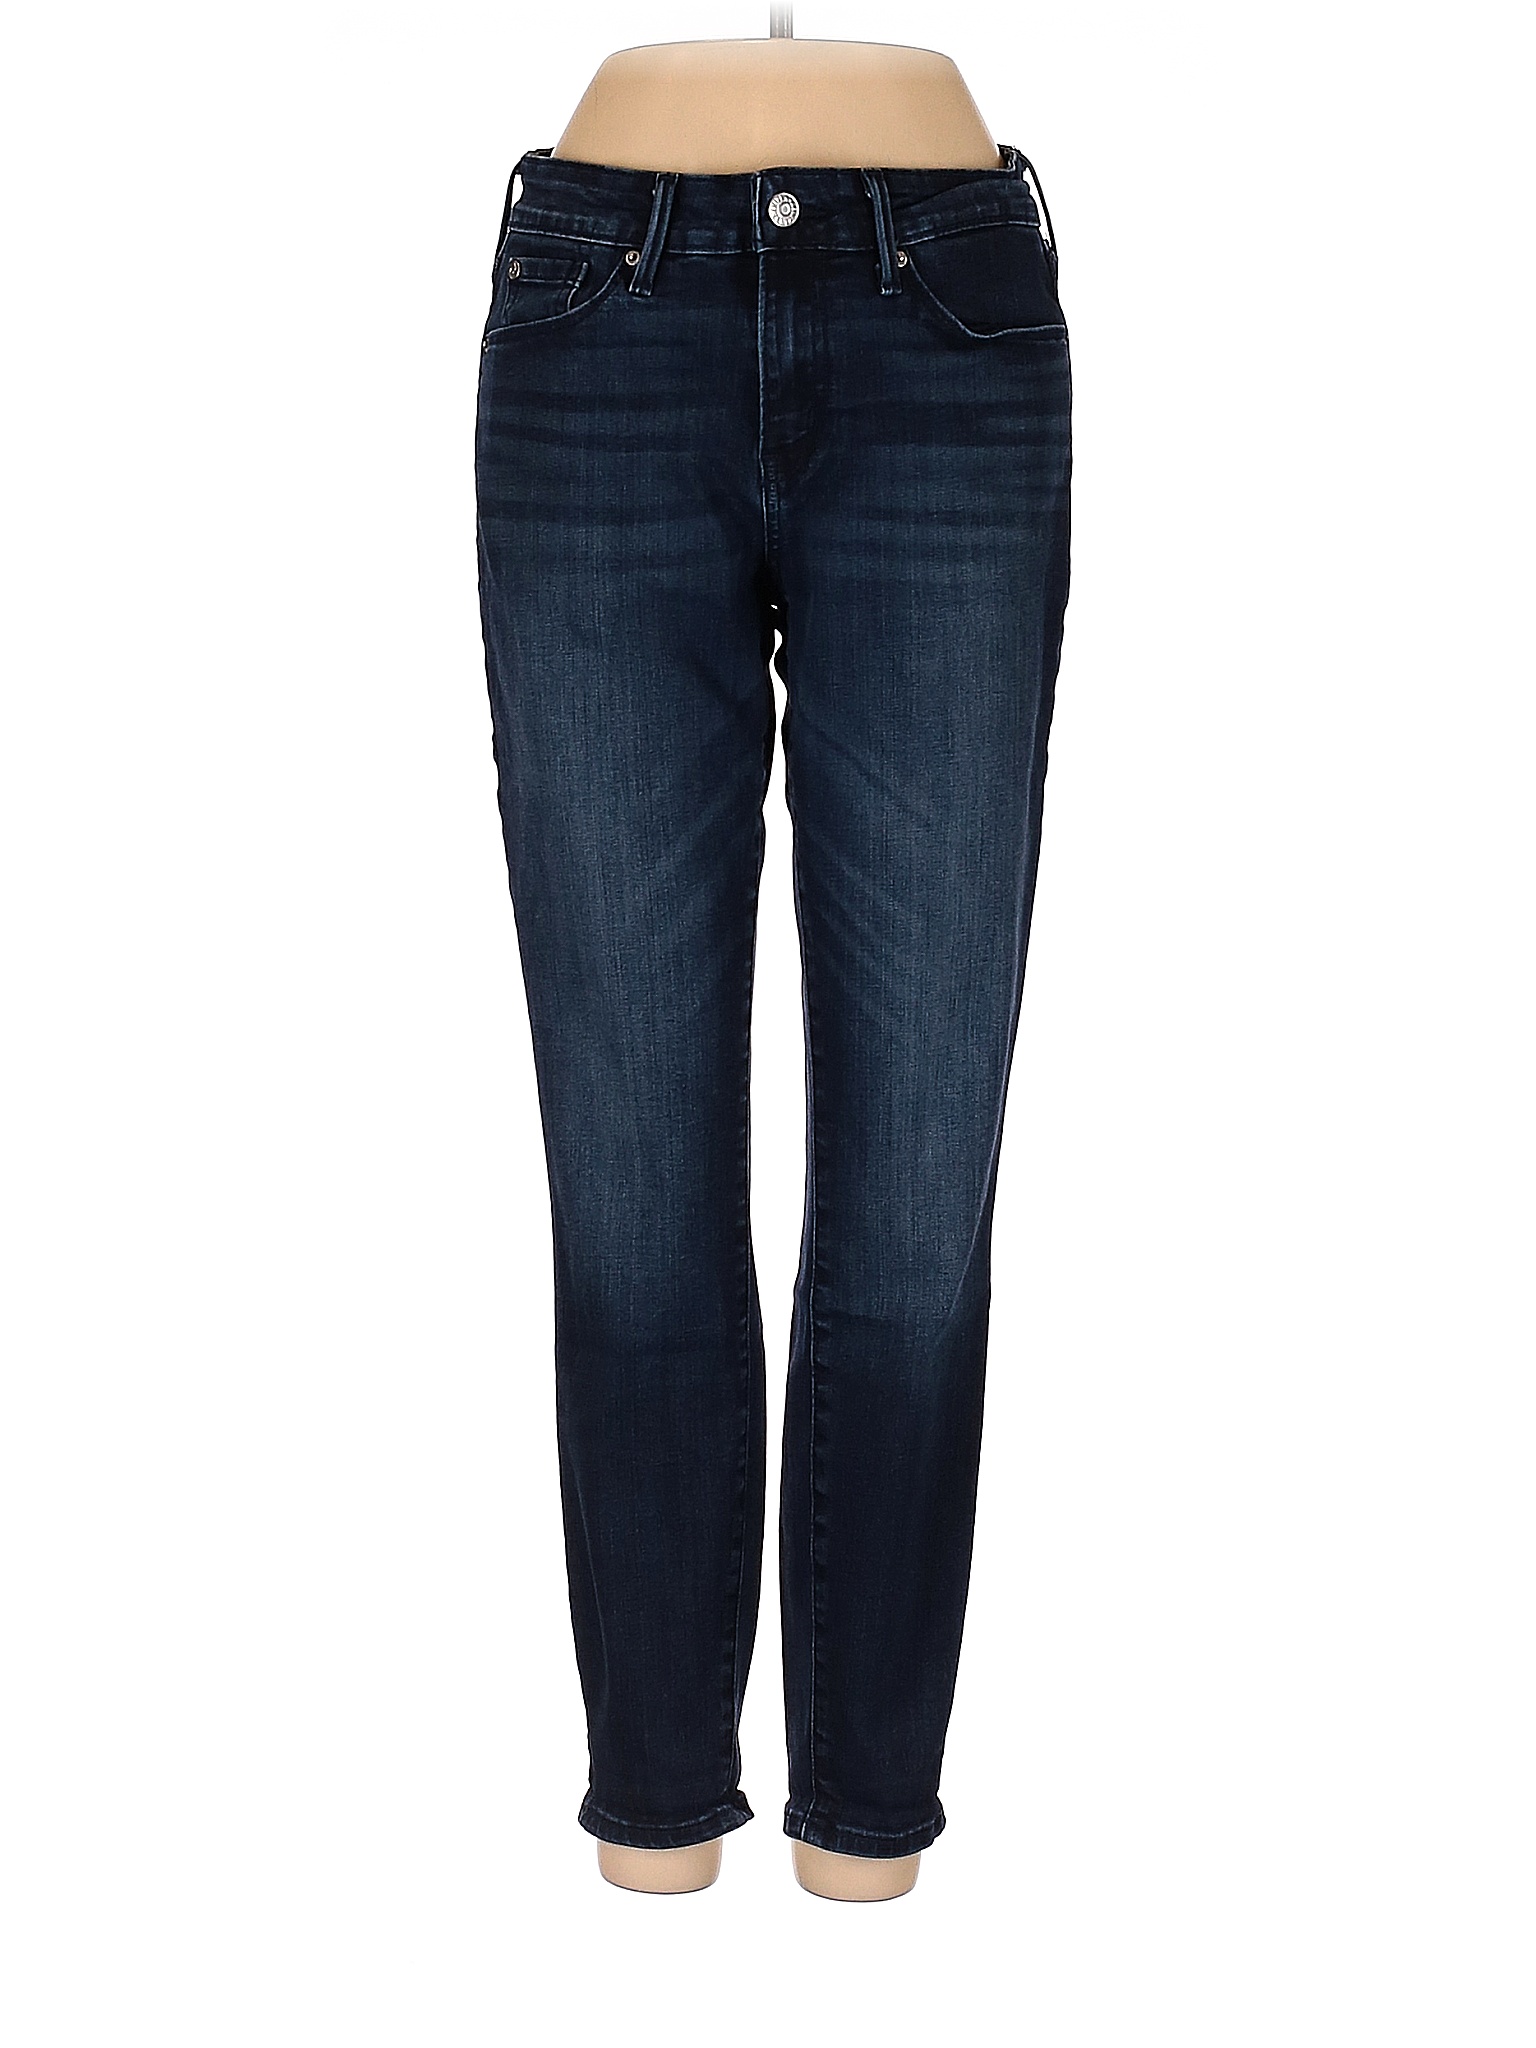 Denizen from Levi's Solid Blue Jeans 27 Waist - 63% off | thredUP